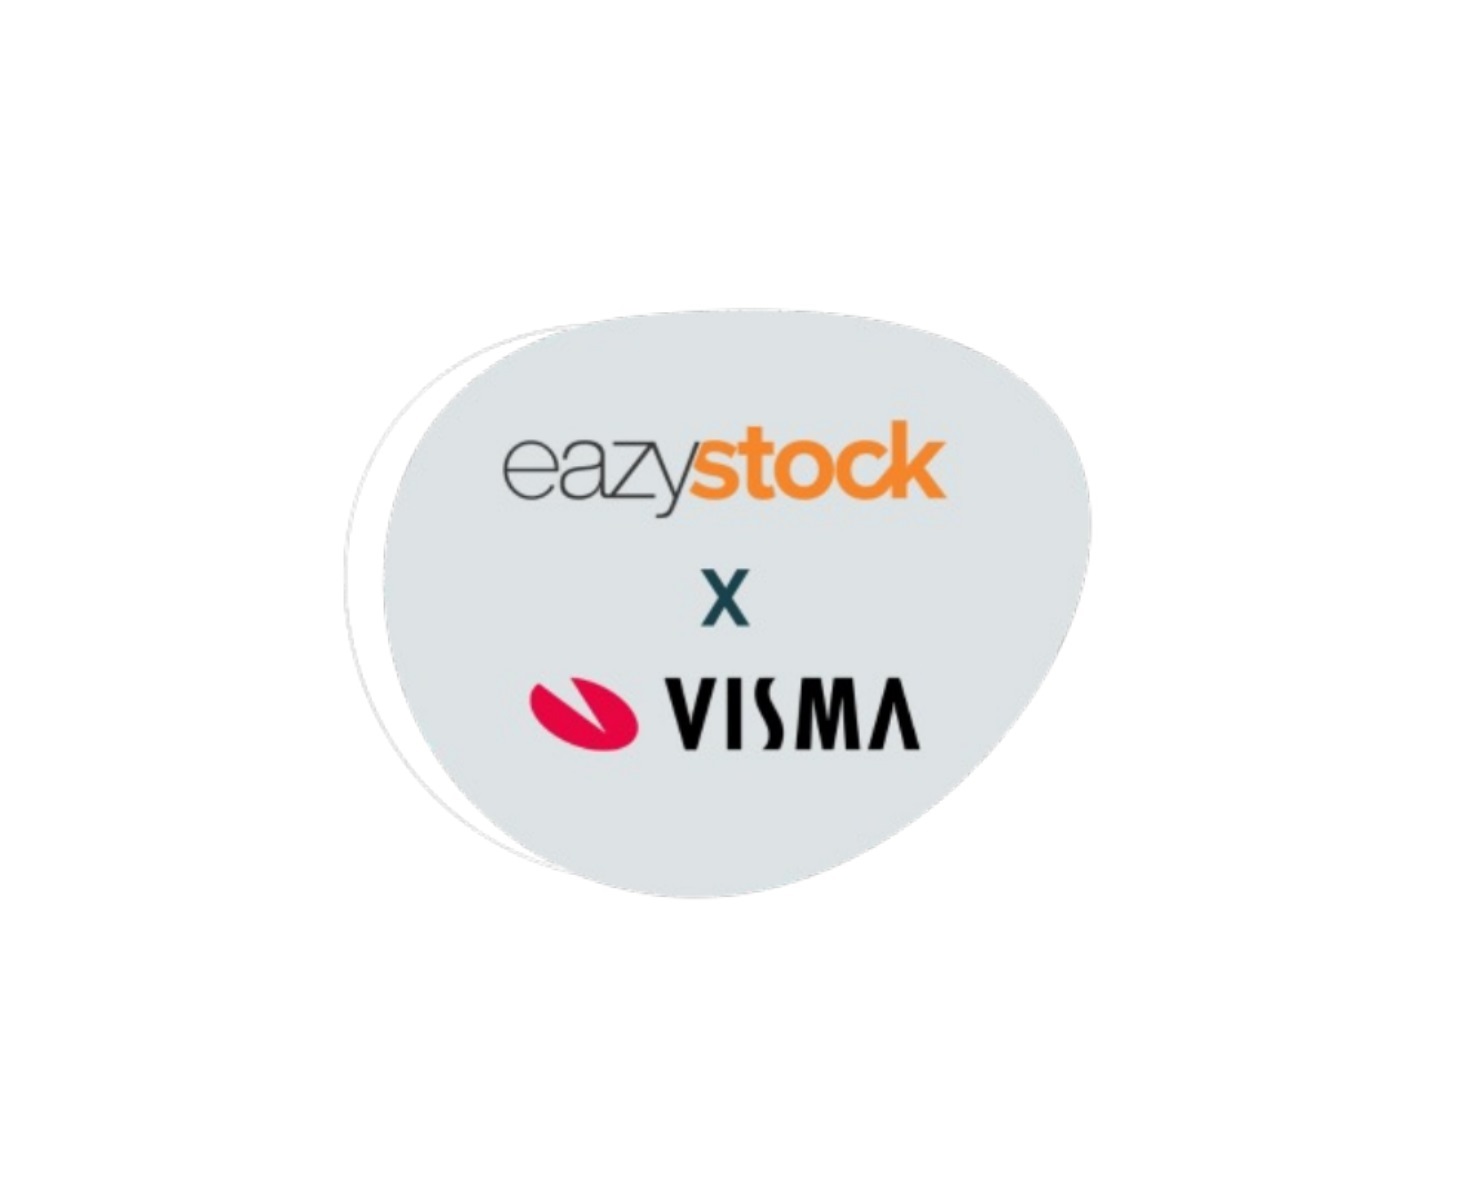 Testa Eazystock till Visma.net kostnadsfritt!